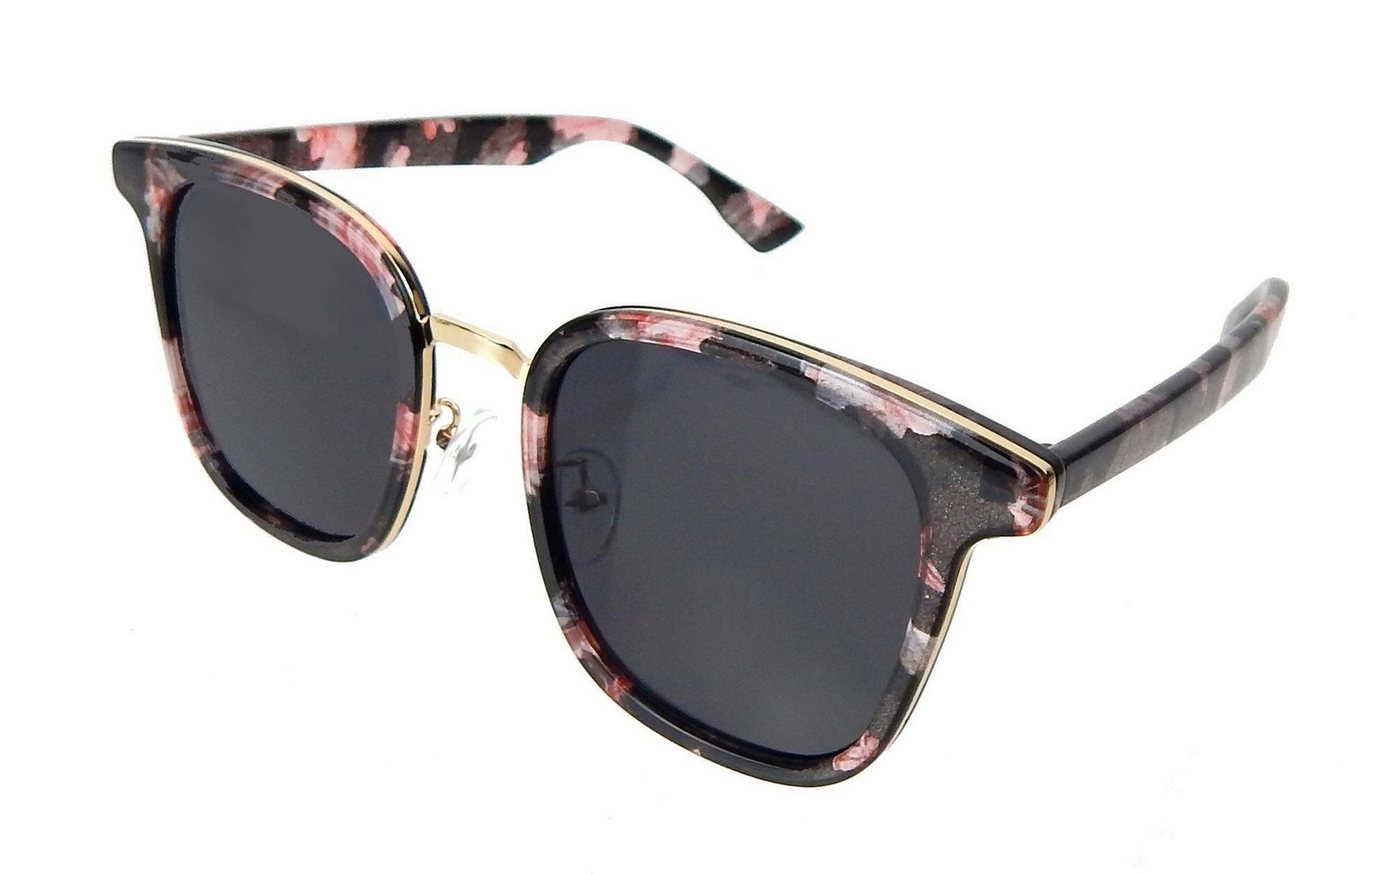 Ella Jonte Sonnenbrille trendige Brille schwarz rosa gold transparent UV 400 im Etui von Ella Jonte